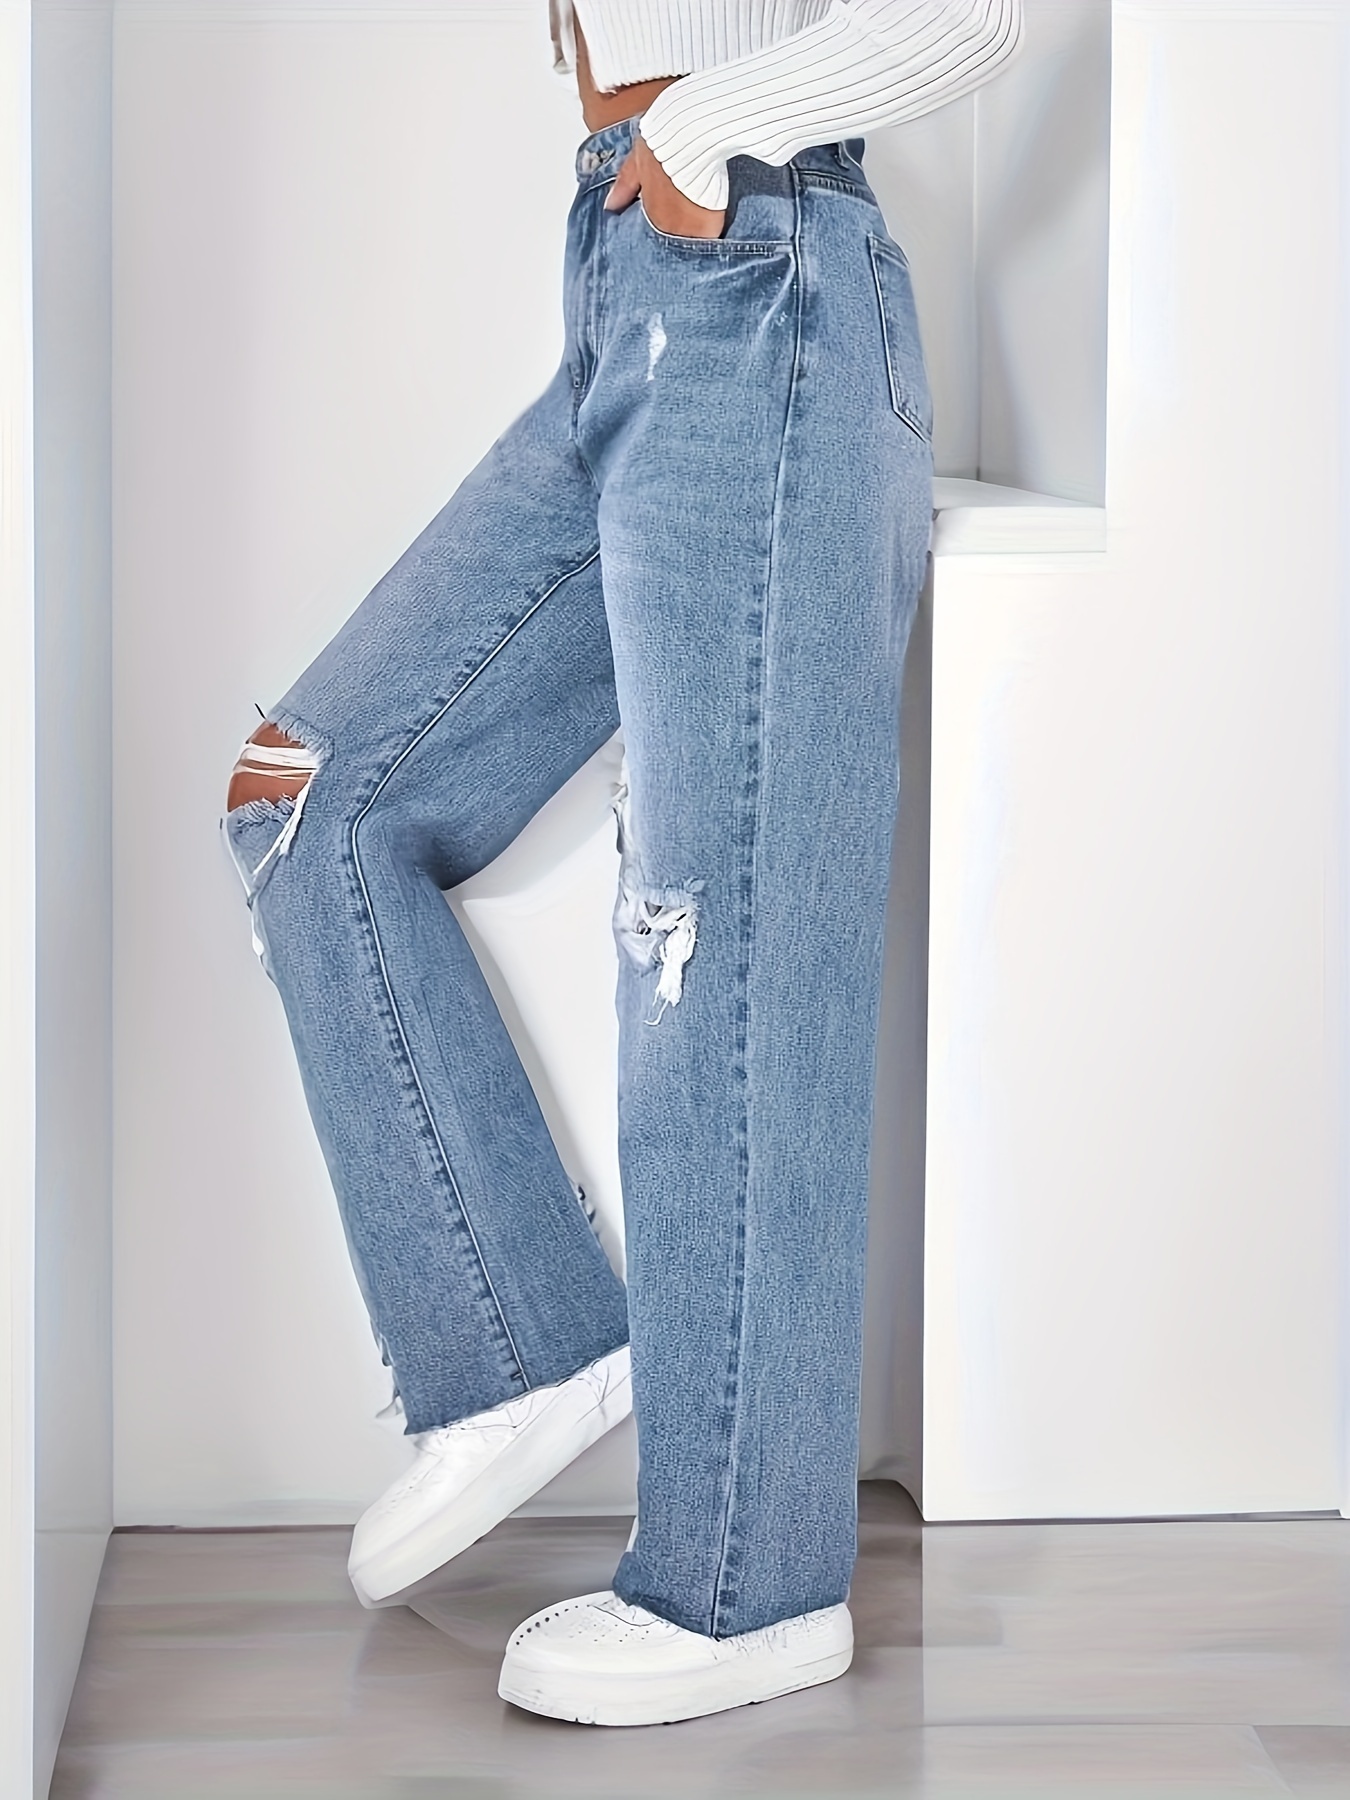 Jeans Rectos * Sin Rematar, Pantalones De Mezclilla No Elásticos Con  Agujeros Rasgados, Jeans Y Ropa De Mezclilla Para Mujer